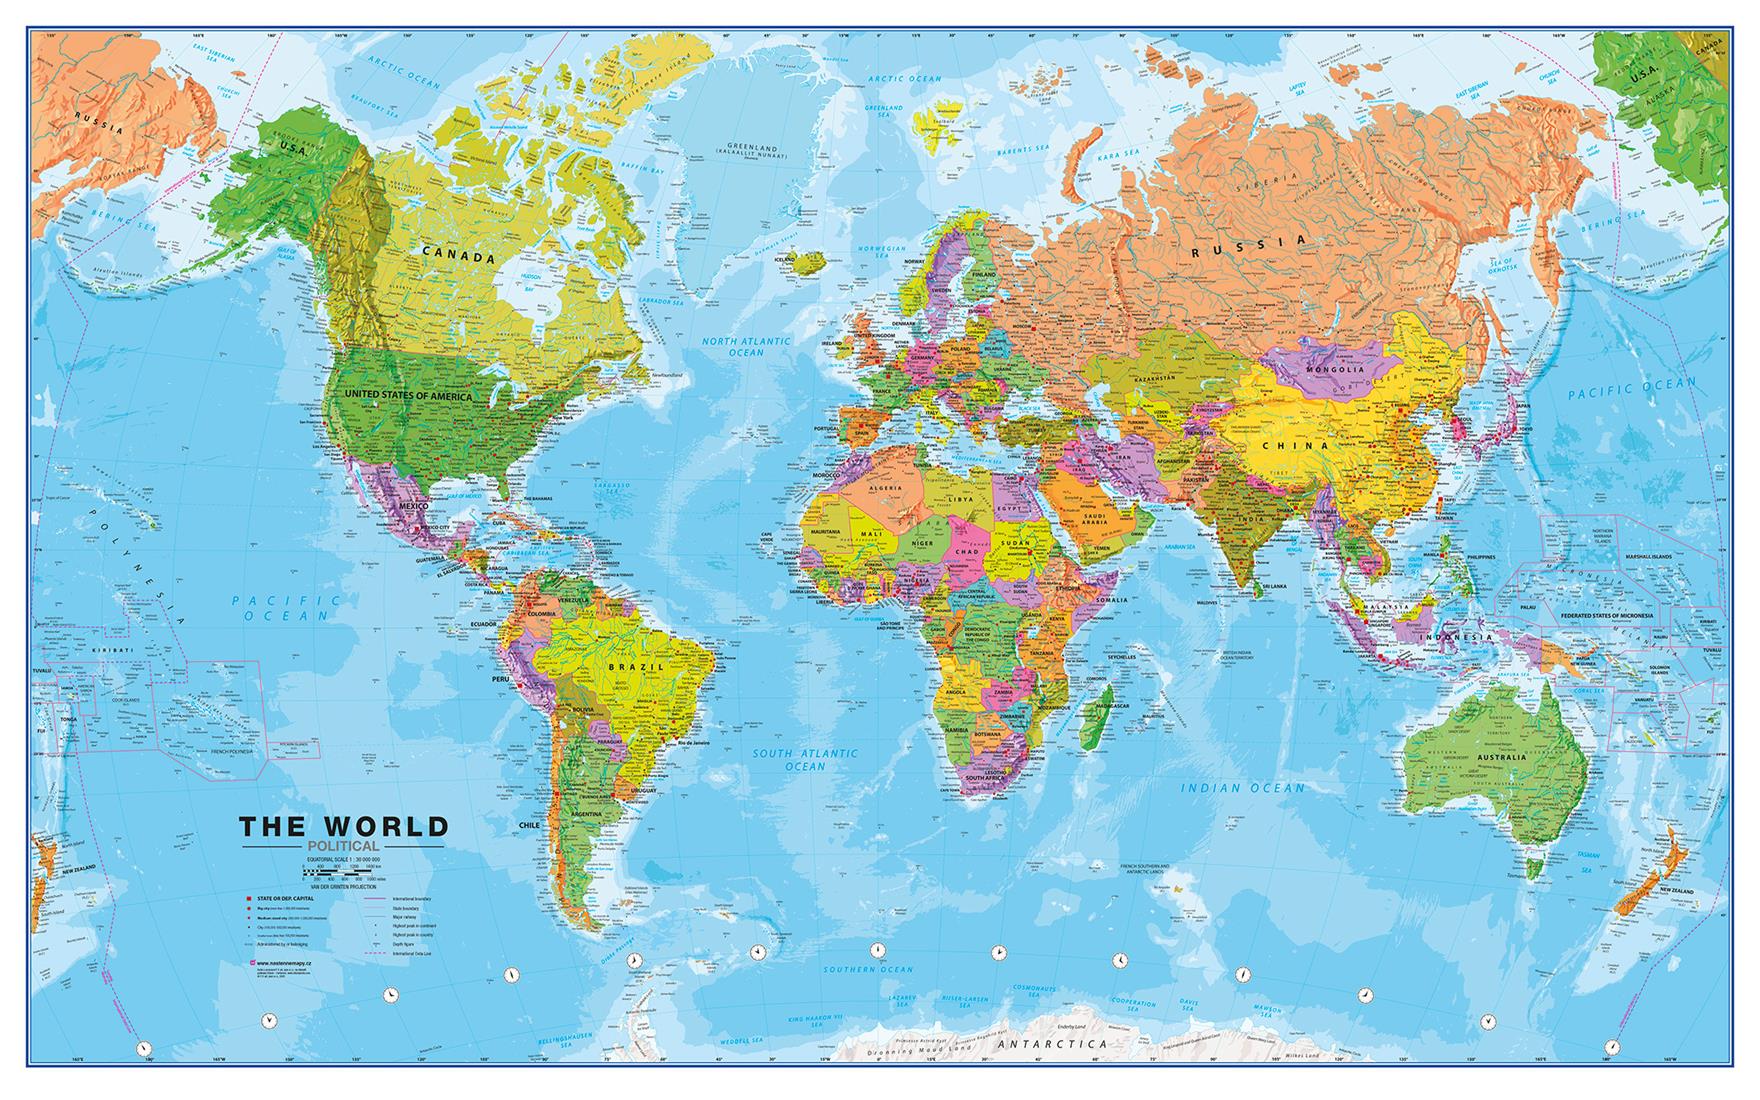 Politická nástěnná mapa světa